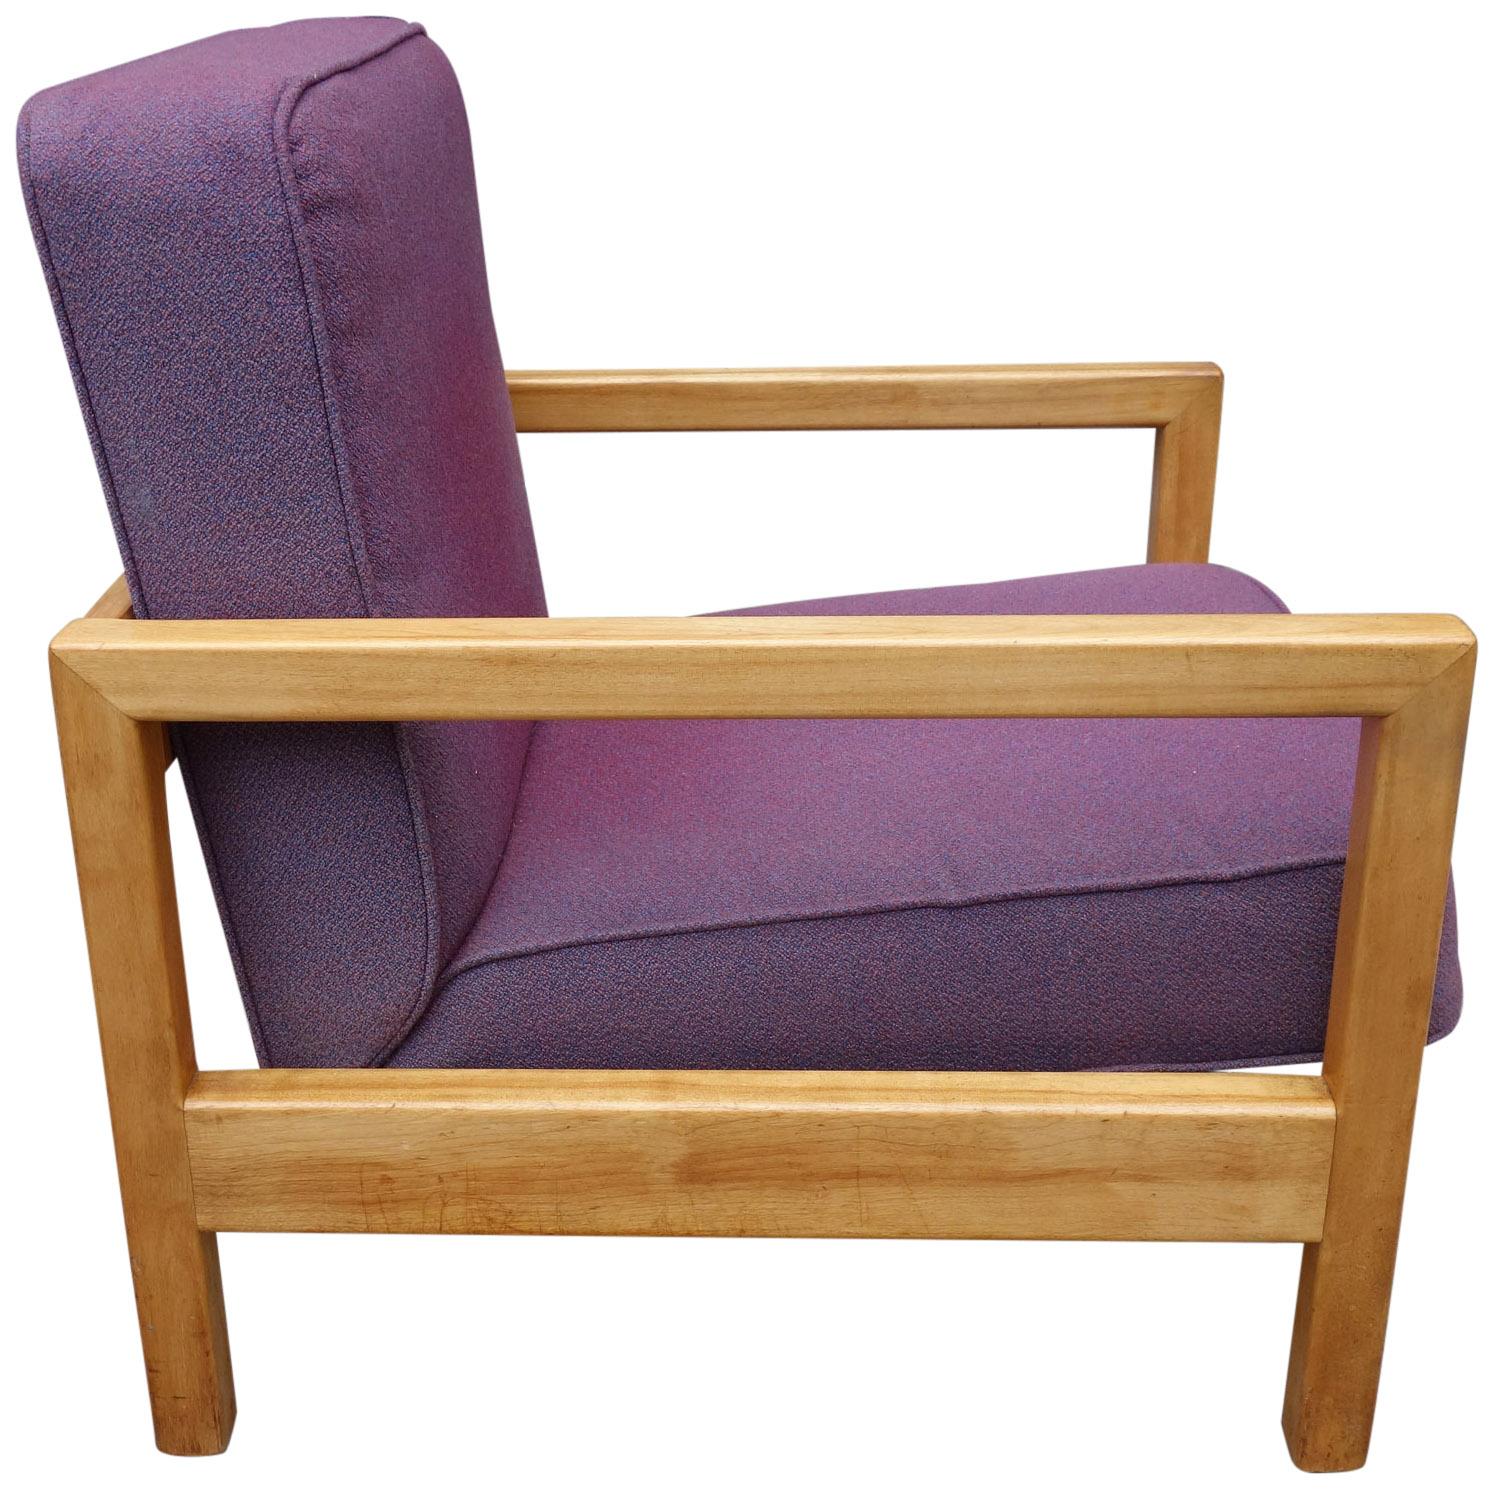 Nous vous présentons ce fauteuil conçu par George Nelson, modèle 4774. Ce design très cubiste a été fabriqué par Herman Miller dans les années 1950. En bois de bouleau massif avec revêtement d'origine. Entièrement non restauré et finition d'origine.